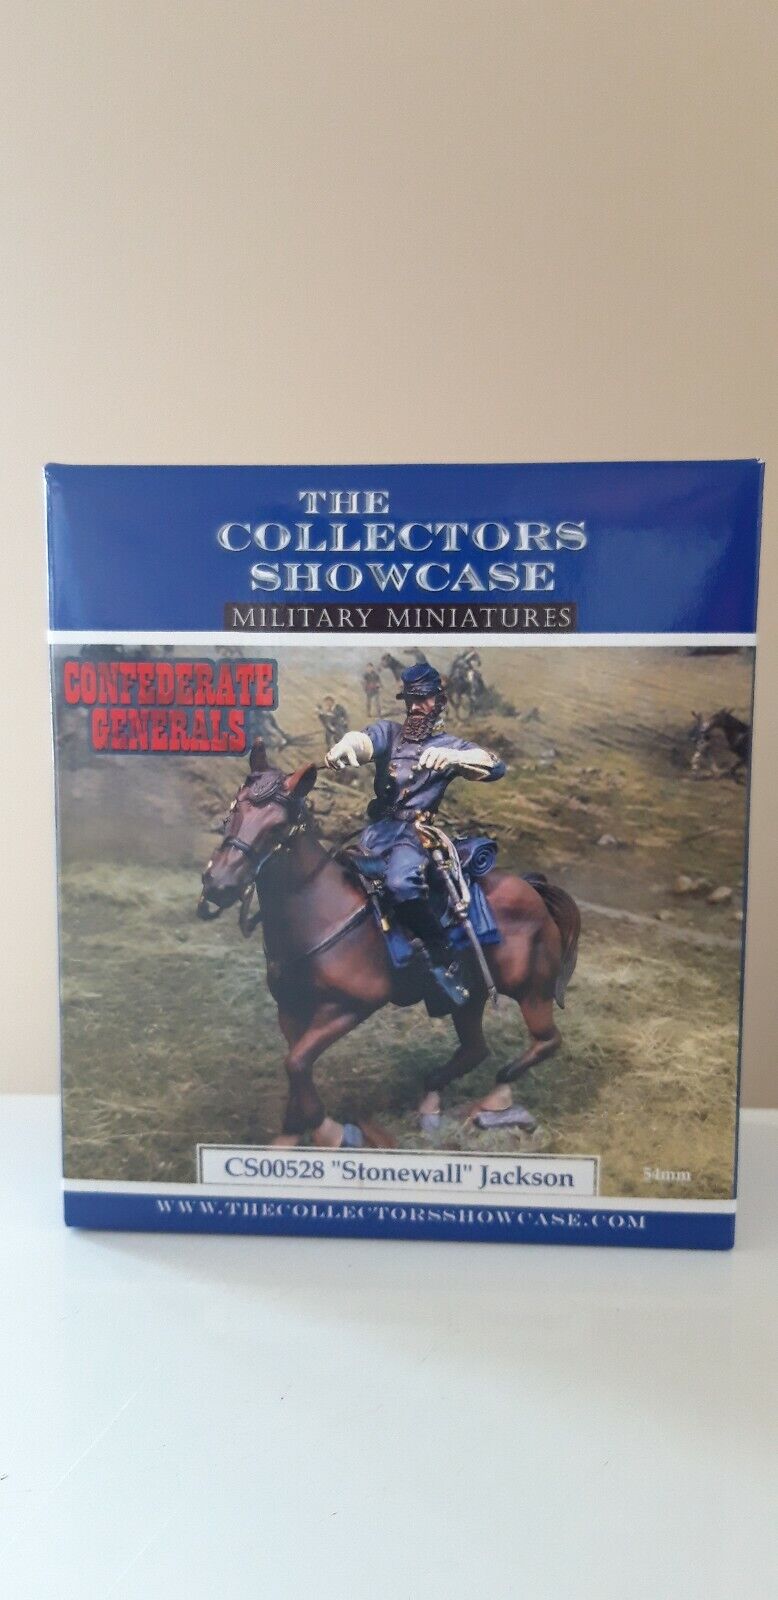 The collectors showcase acw cs00528 stonewall Jackson union 1:30 metal